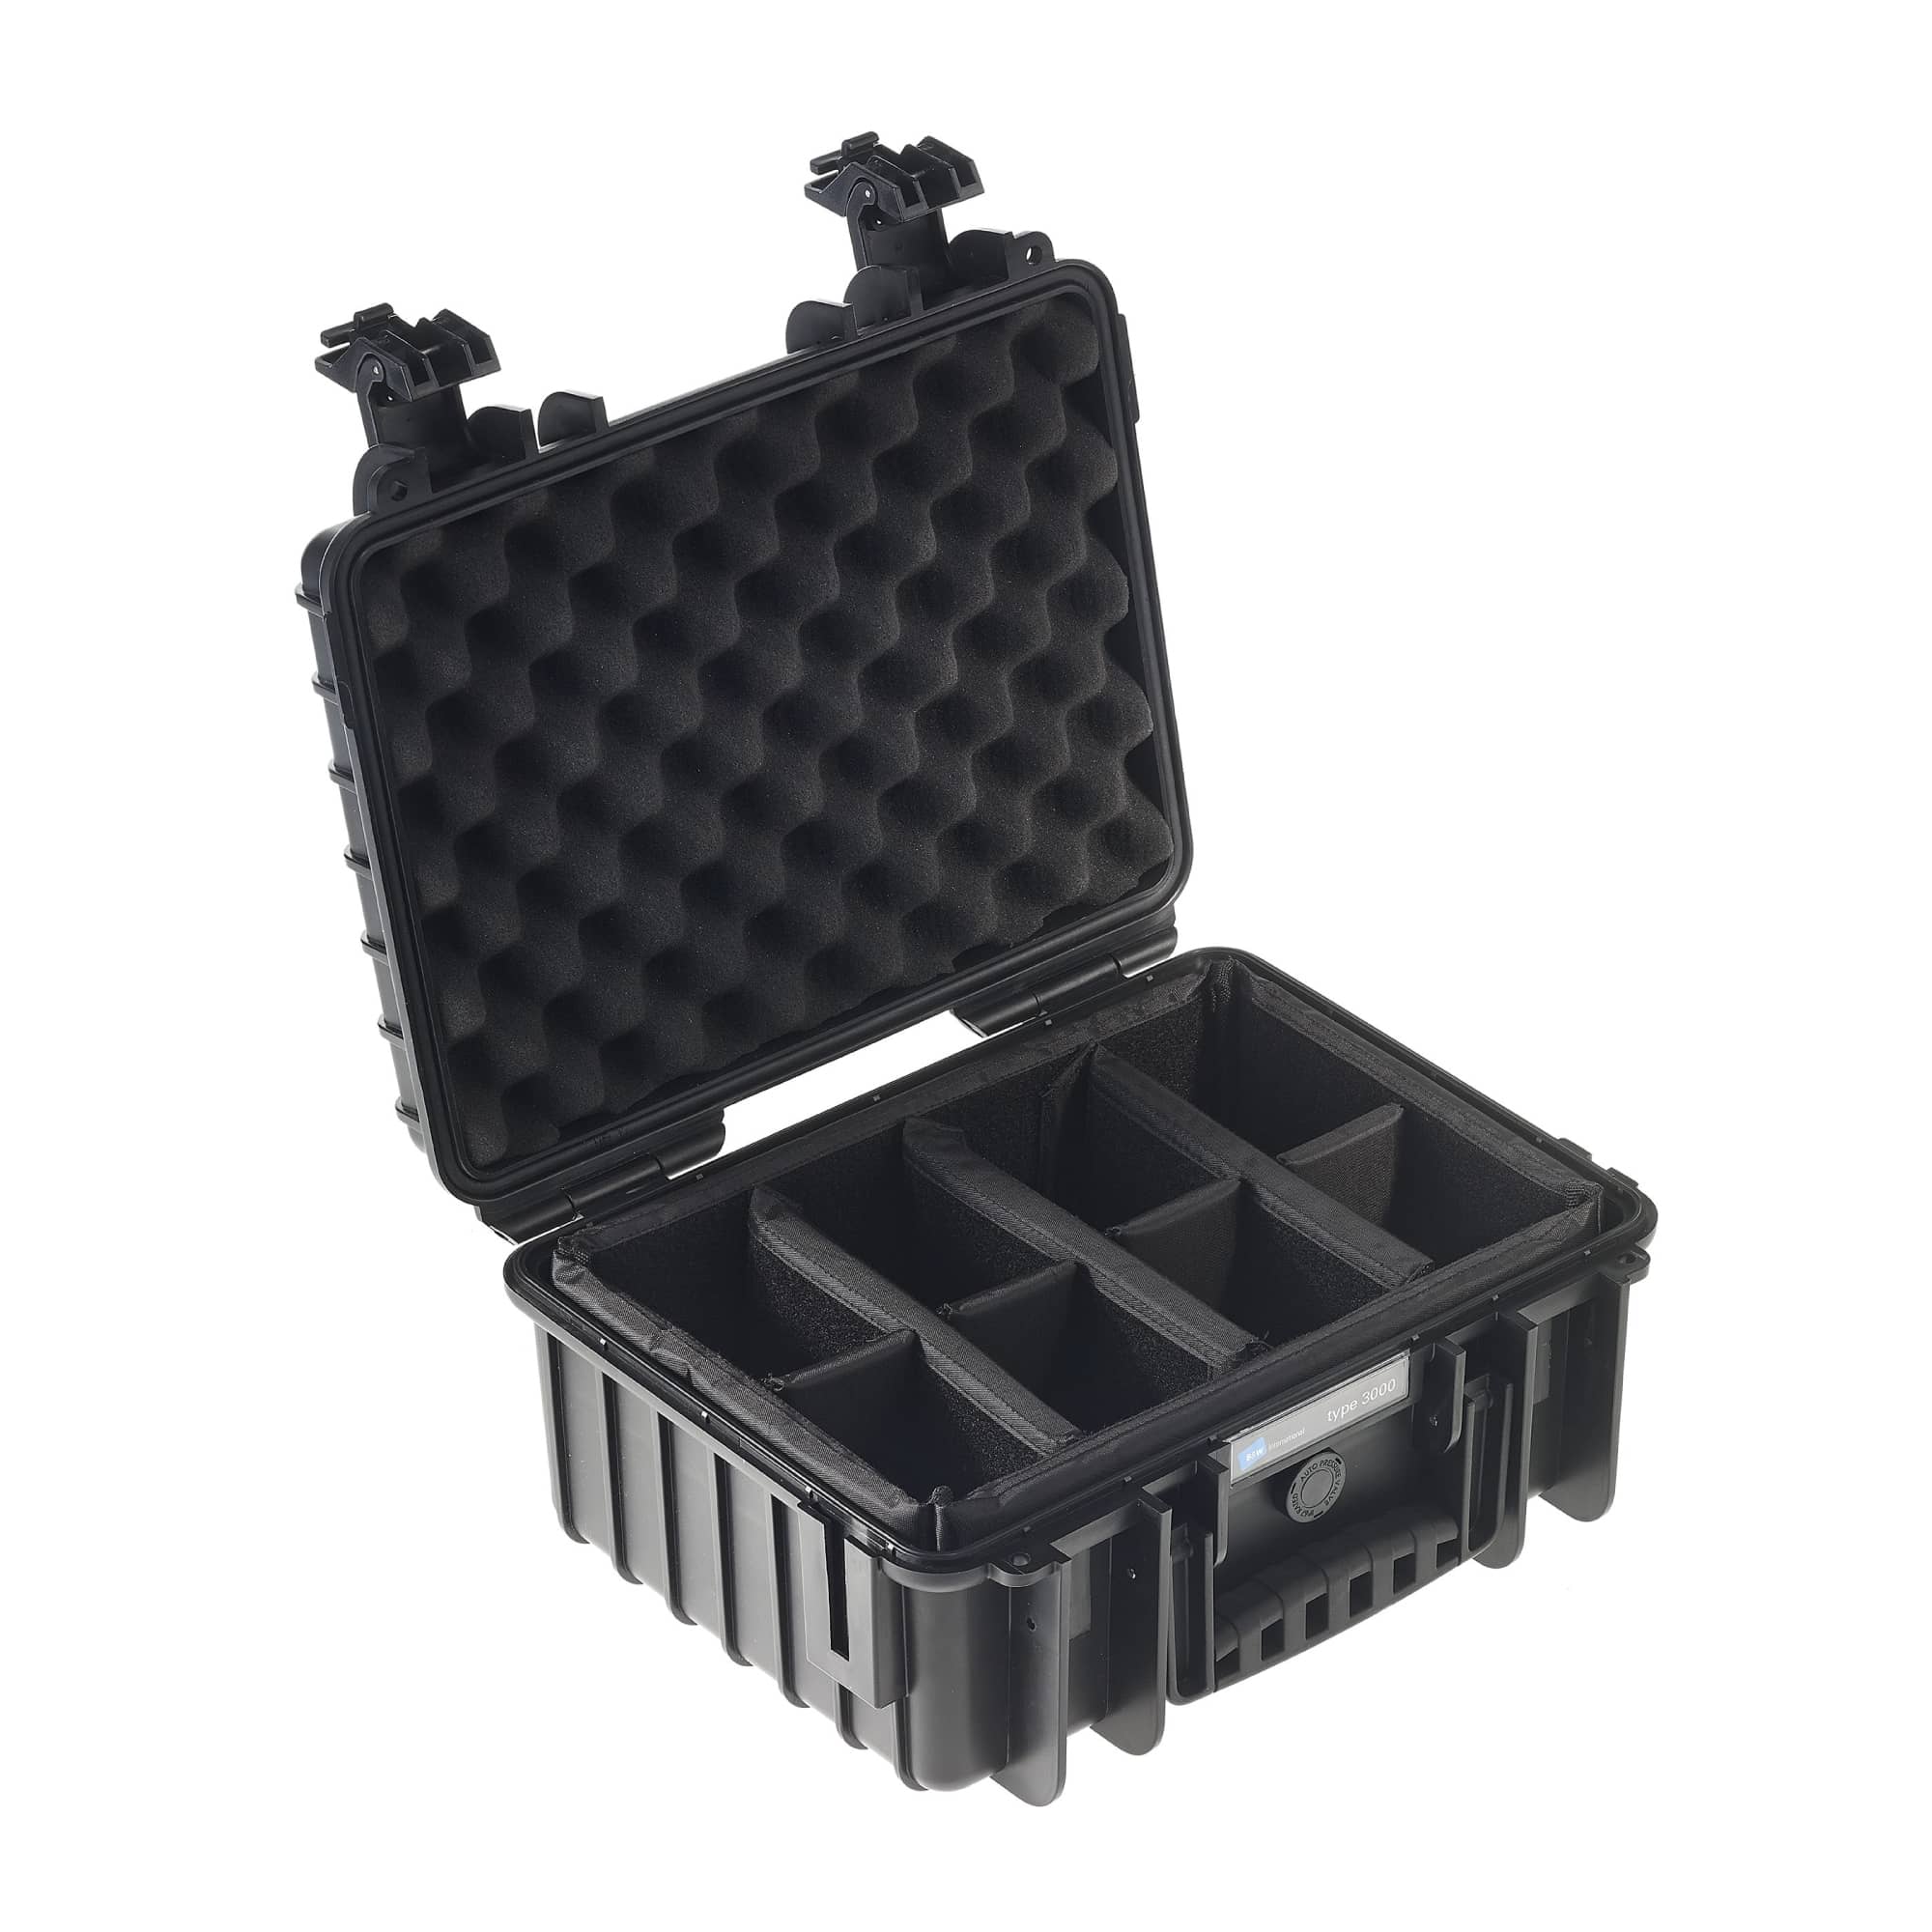 B&W Outdoor Case Typ 3000 in schwarz mit variabler Facheinteilung (RPD)